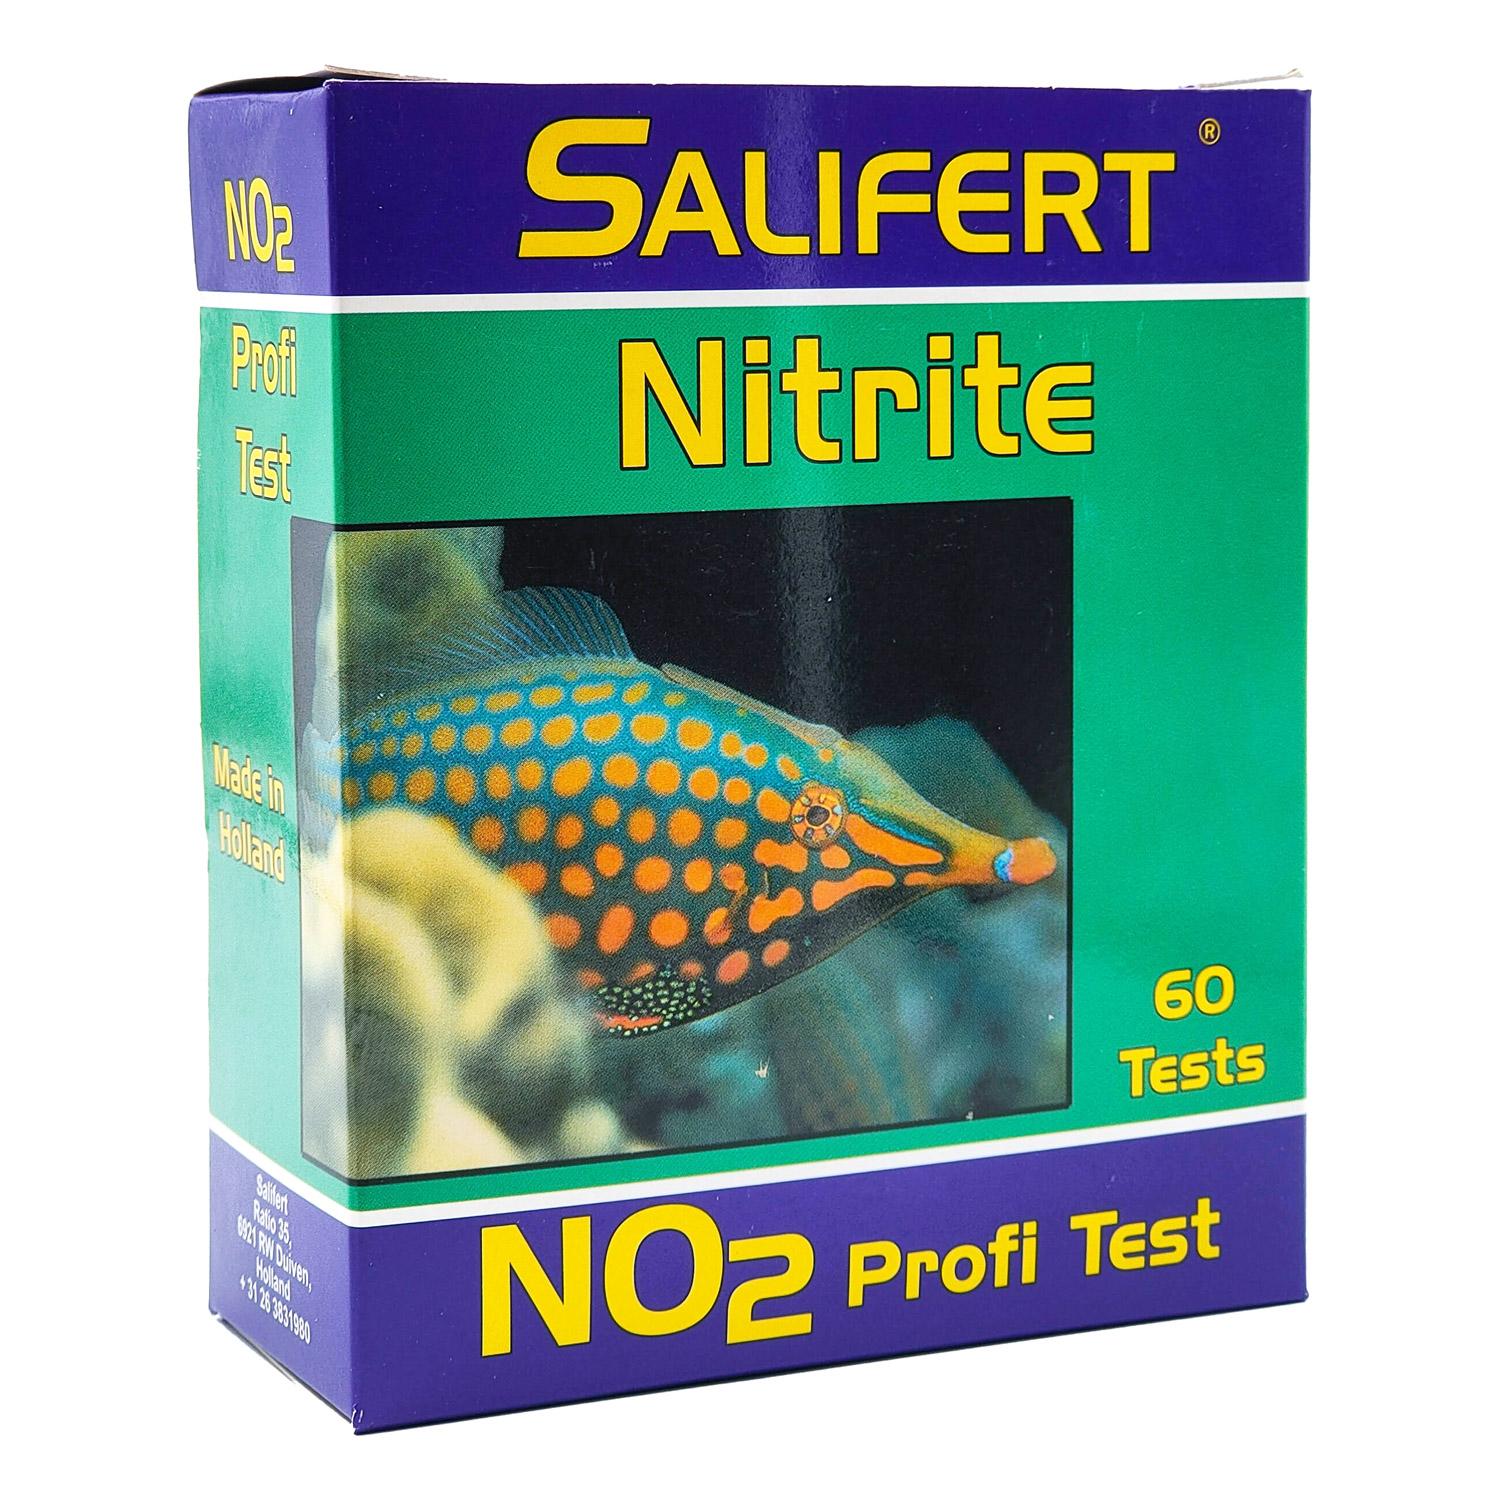 !!ร้านค้าแนะนำ## (ค่าส่งถูกมาก)Salifert Nitrite No2 Test Kit ชุดทดสอบค่าไนเตรท ##อุปกรณ์เลี้ยงปลา สัตว์น้ำ ตู้ปลา ต้นไม้น้ำ สวยงาม ปั๊มน้ำ ปั๊มลม แต่งห้อง